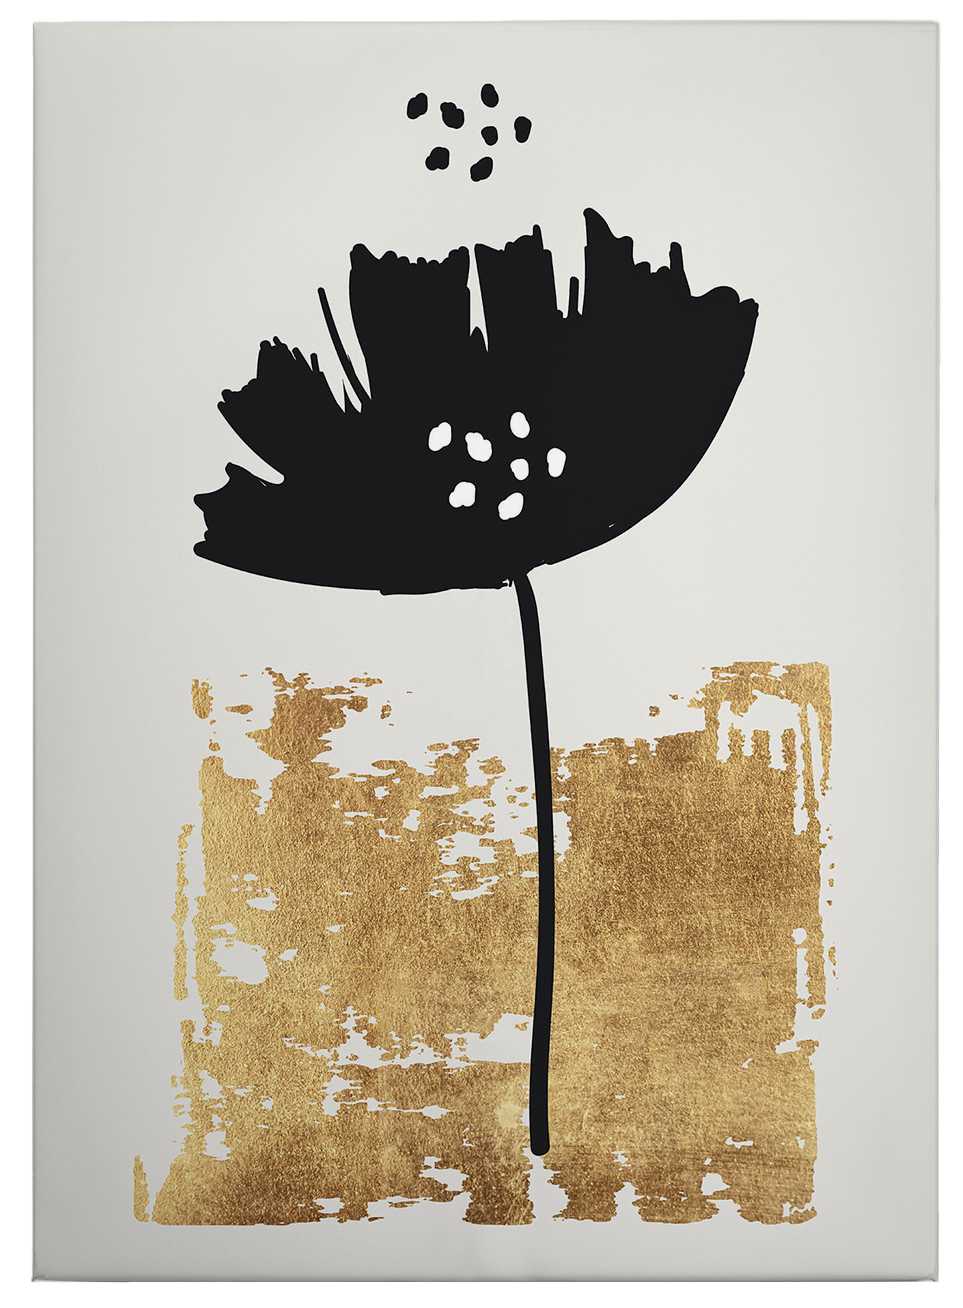             Toile "Fleur noire" cubiste - 0,50 m x 0,70 m
        